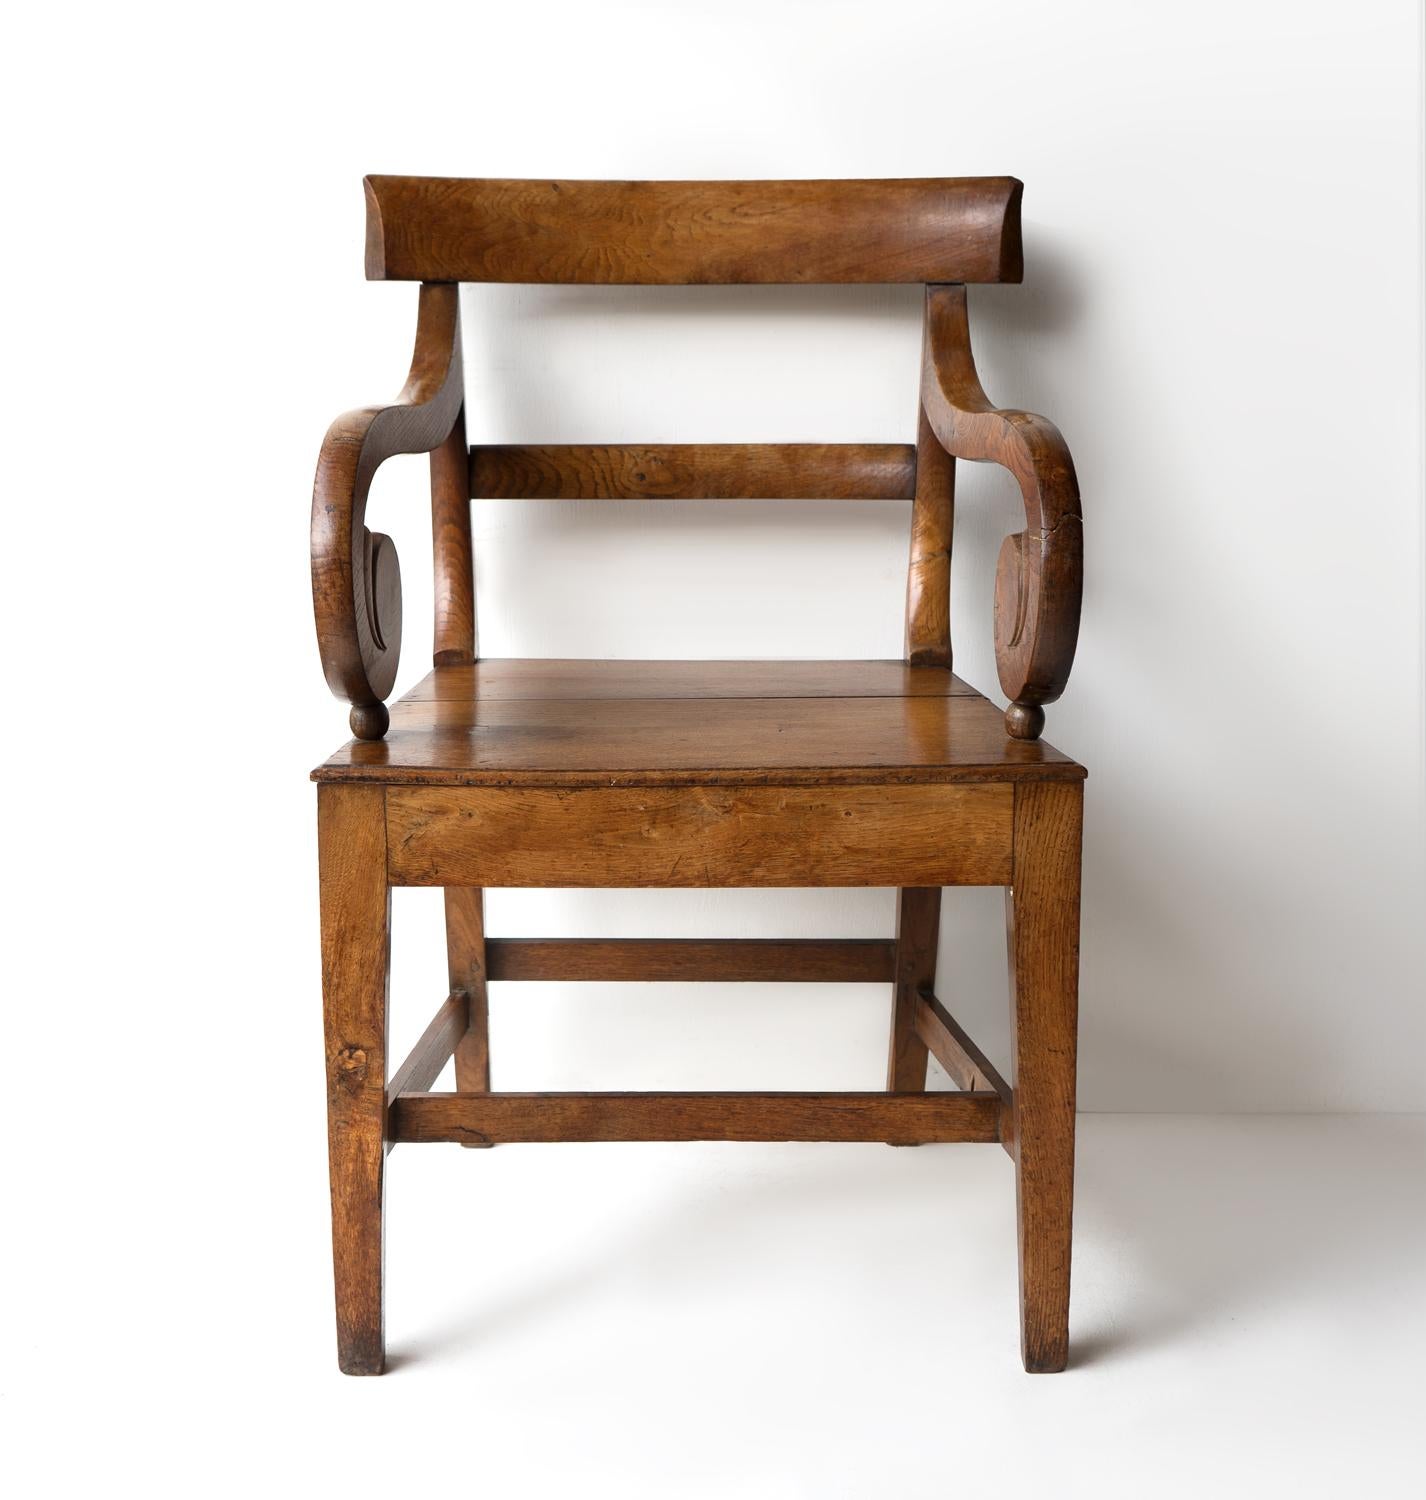 Chêne Fauteuil ancien en chêne à volutes de style Régence, chaise coudée du début du 19e siècle